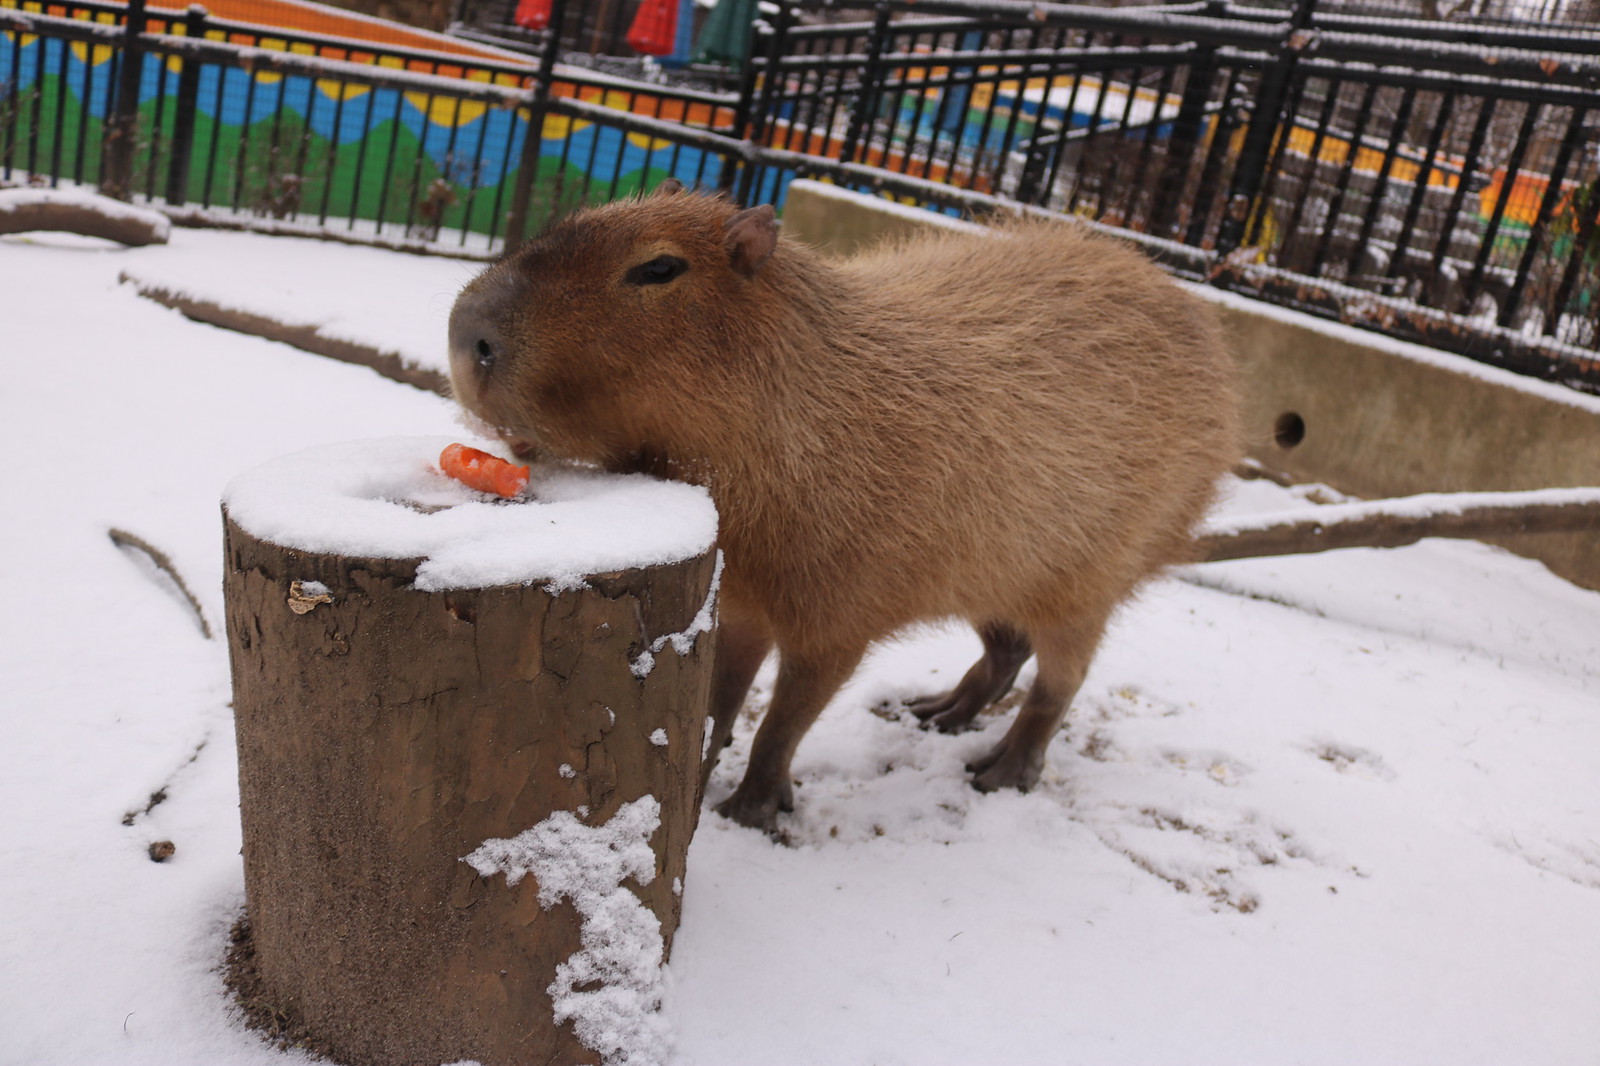 Capybara in the snow